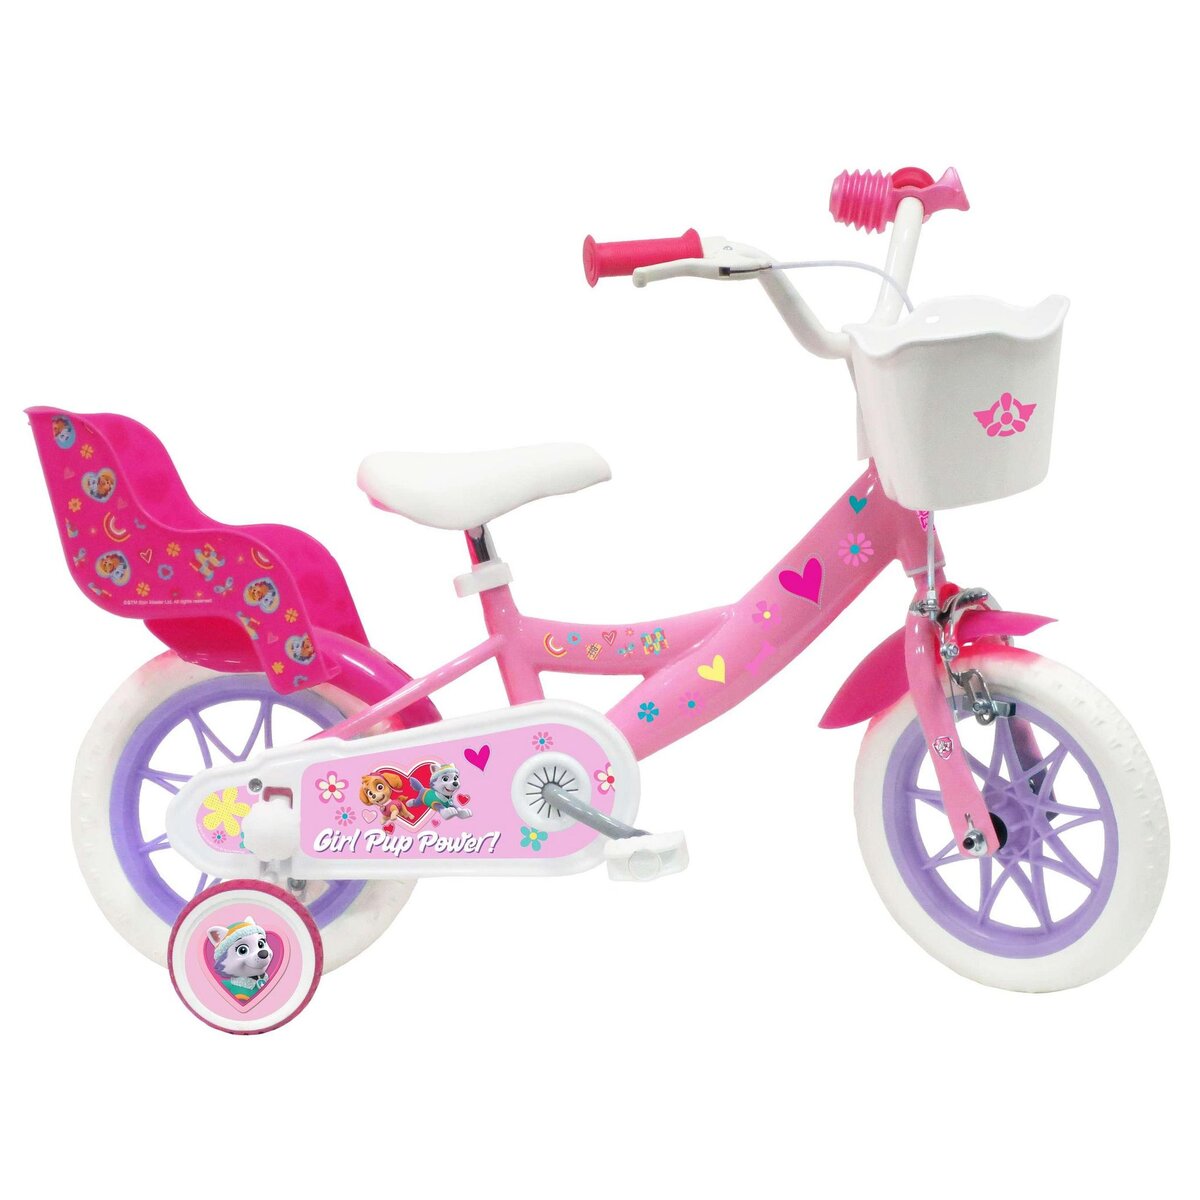 Nickelodeon Vélo 12  Fille Licence  Pat Patrouille Stella  pour enfant de 2 à 4 ans avec stabilisateurs à molettes - 1 Frein